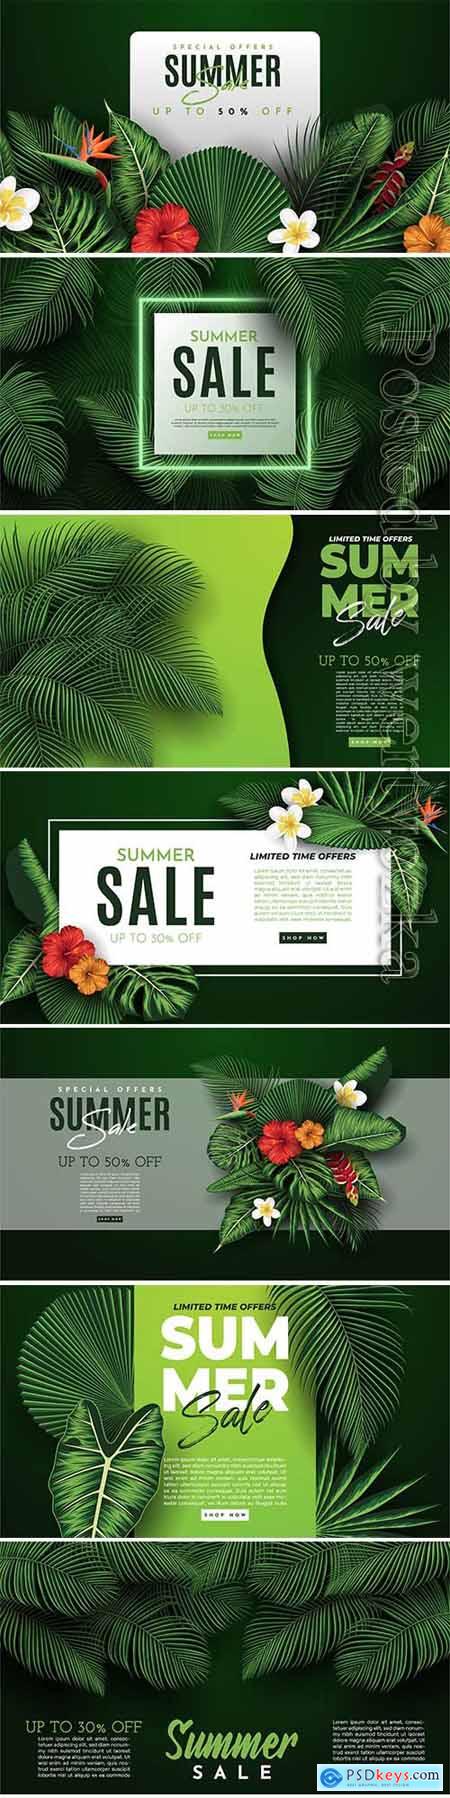 Summer sale vector banner in vector